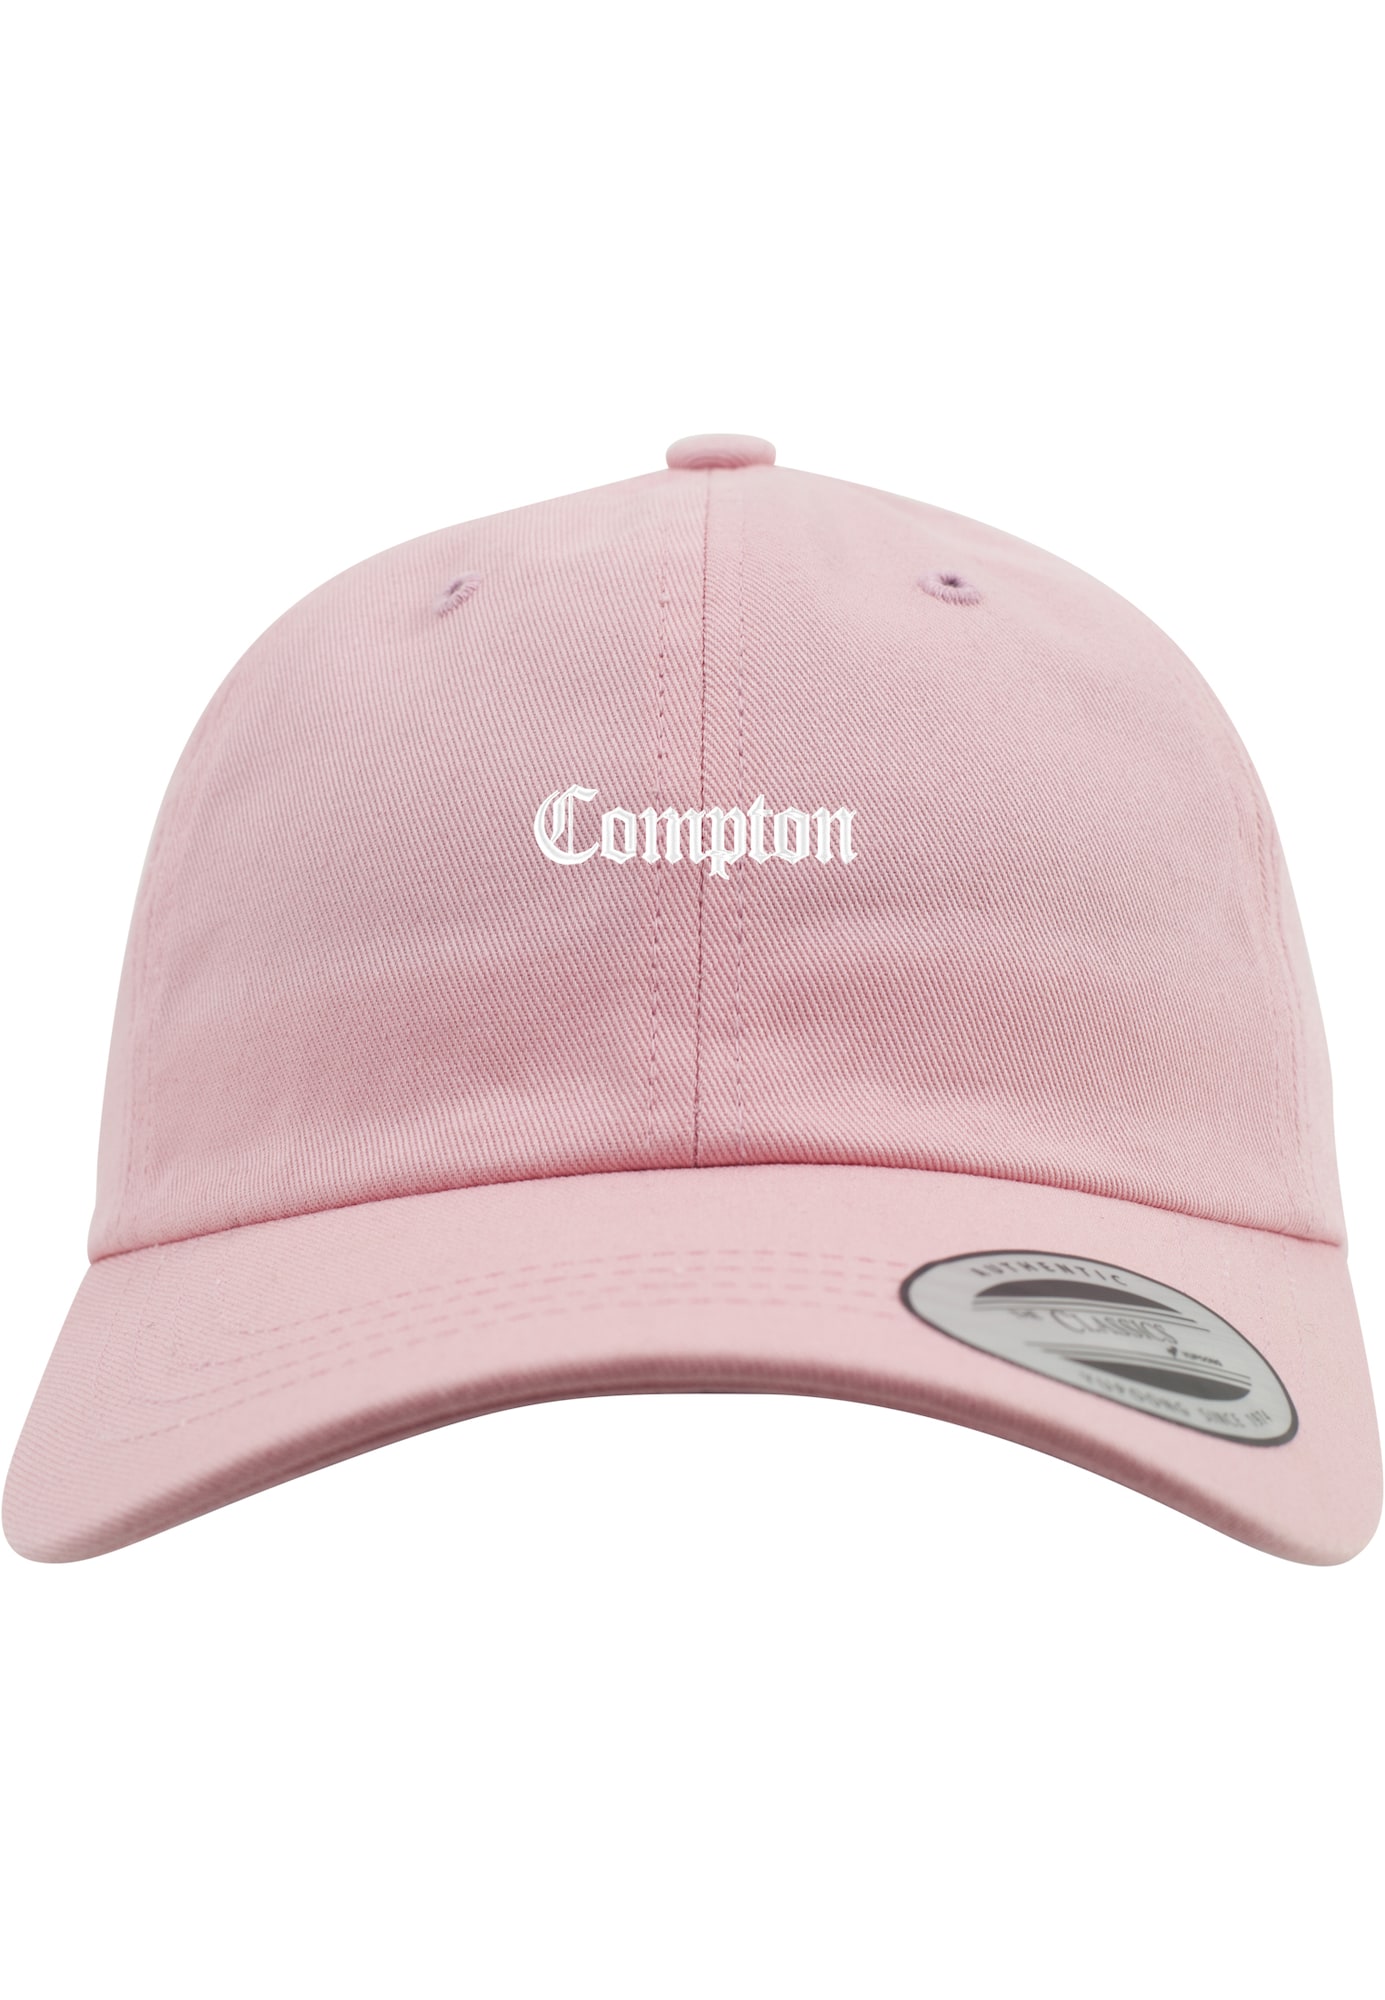 Mister Tee Sapkák 'Compton'  szürke / világos-rózsaszín / fehér